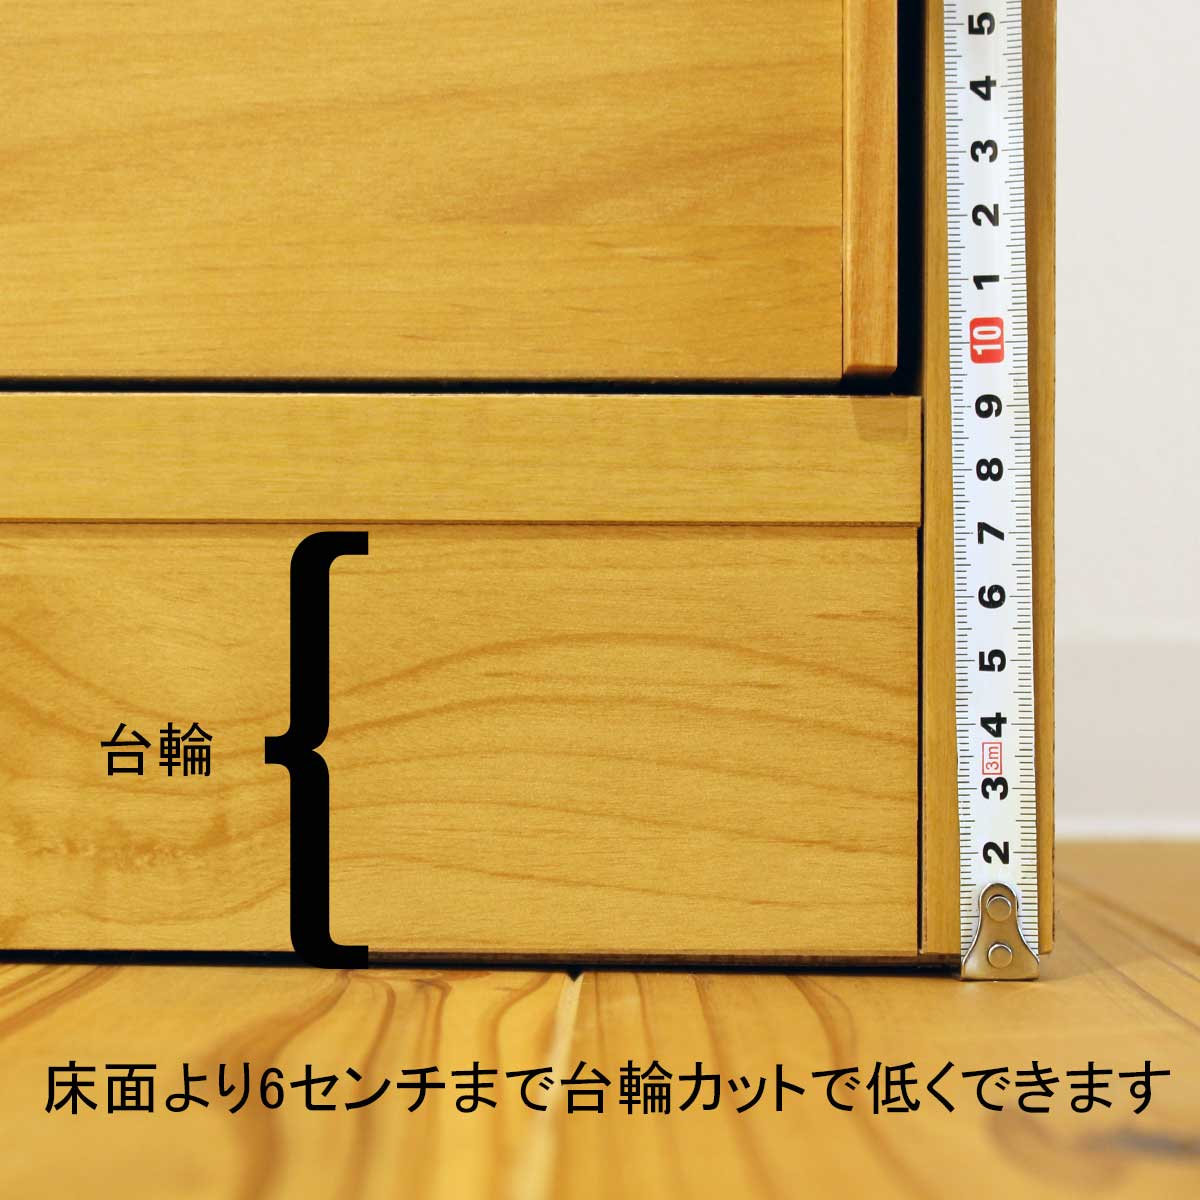 120センチ幅キッチンカウンター「メモリーⅡ」は、床面より6センチまで台輪カットで低くできます